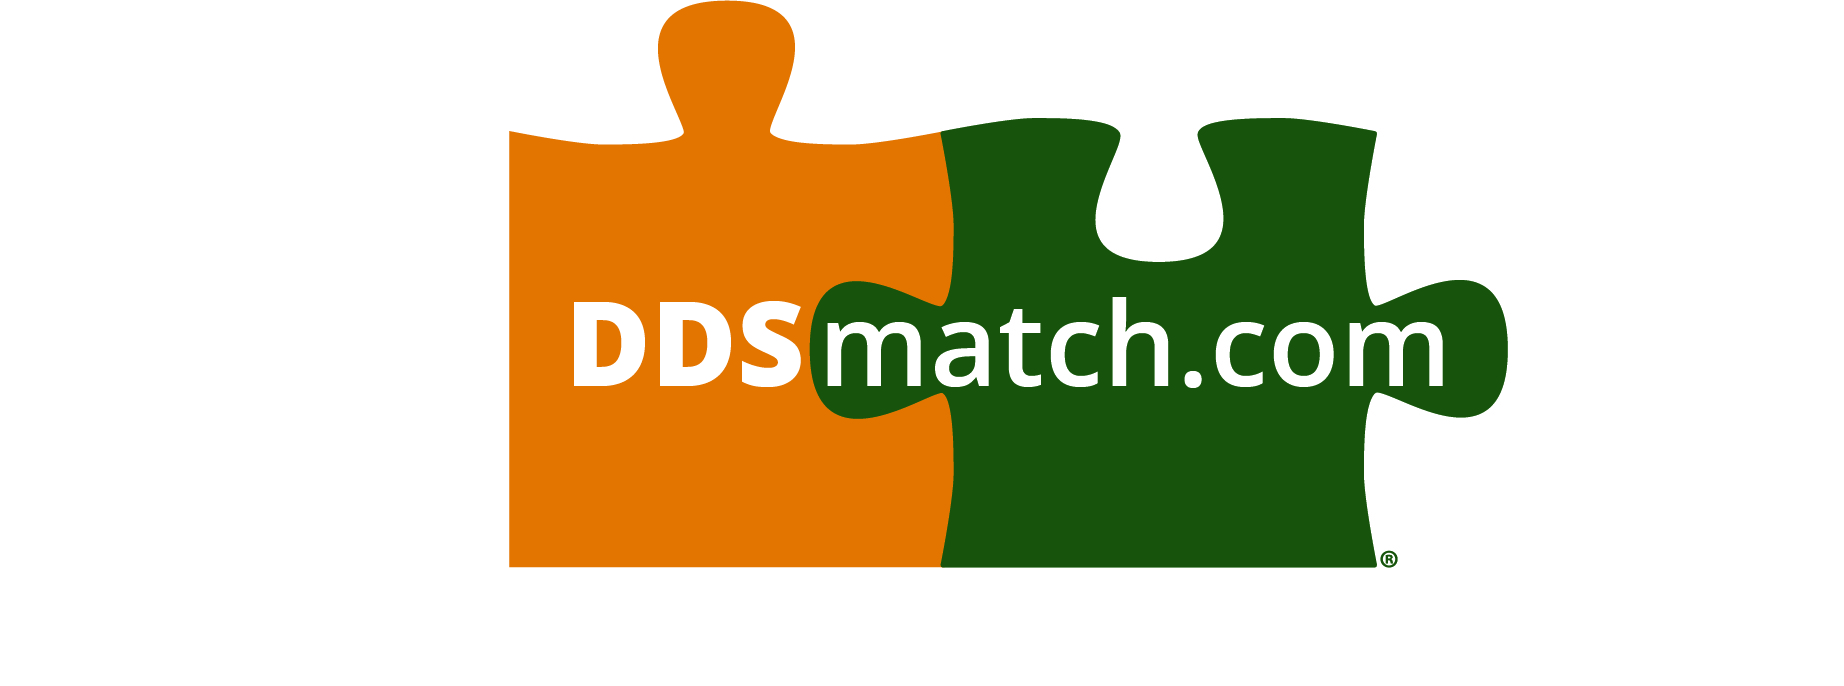 ddsmatch.com - Steve Hipson Logo